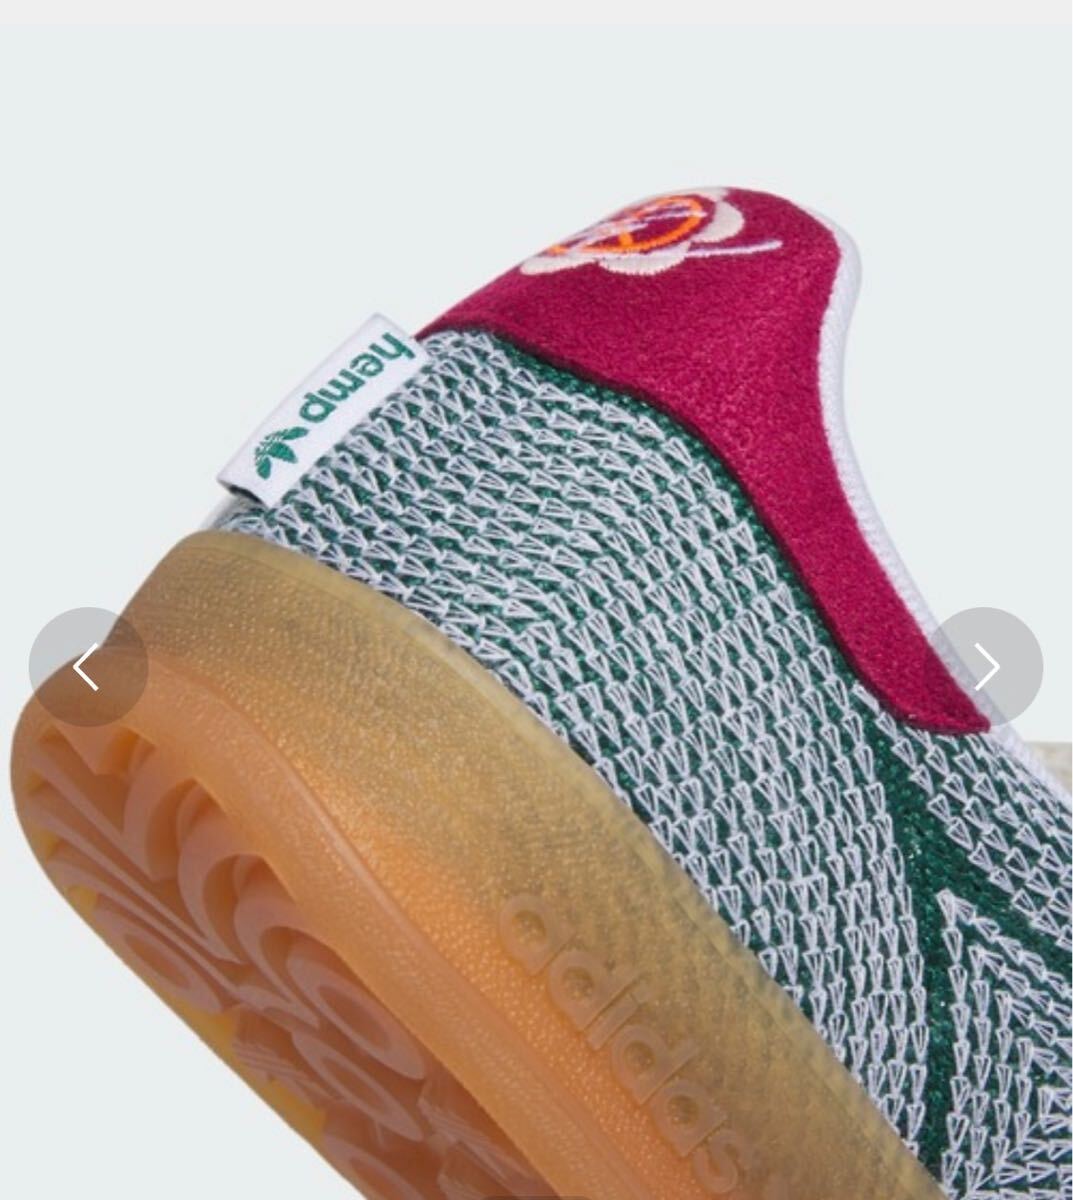 Sean Wotherspoon adidas Originals Gazelle Indoor College Green_画像9